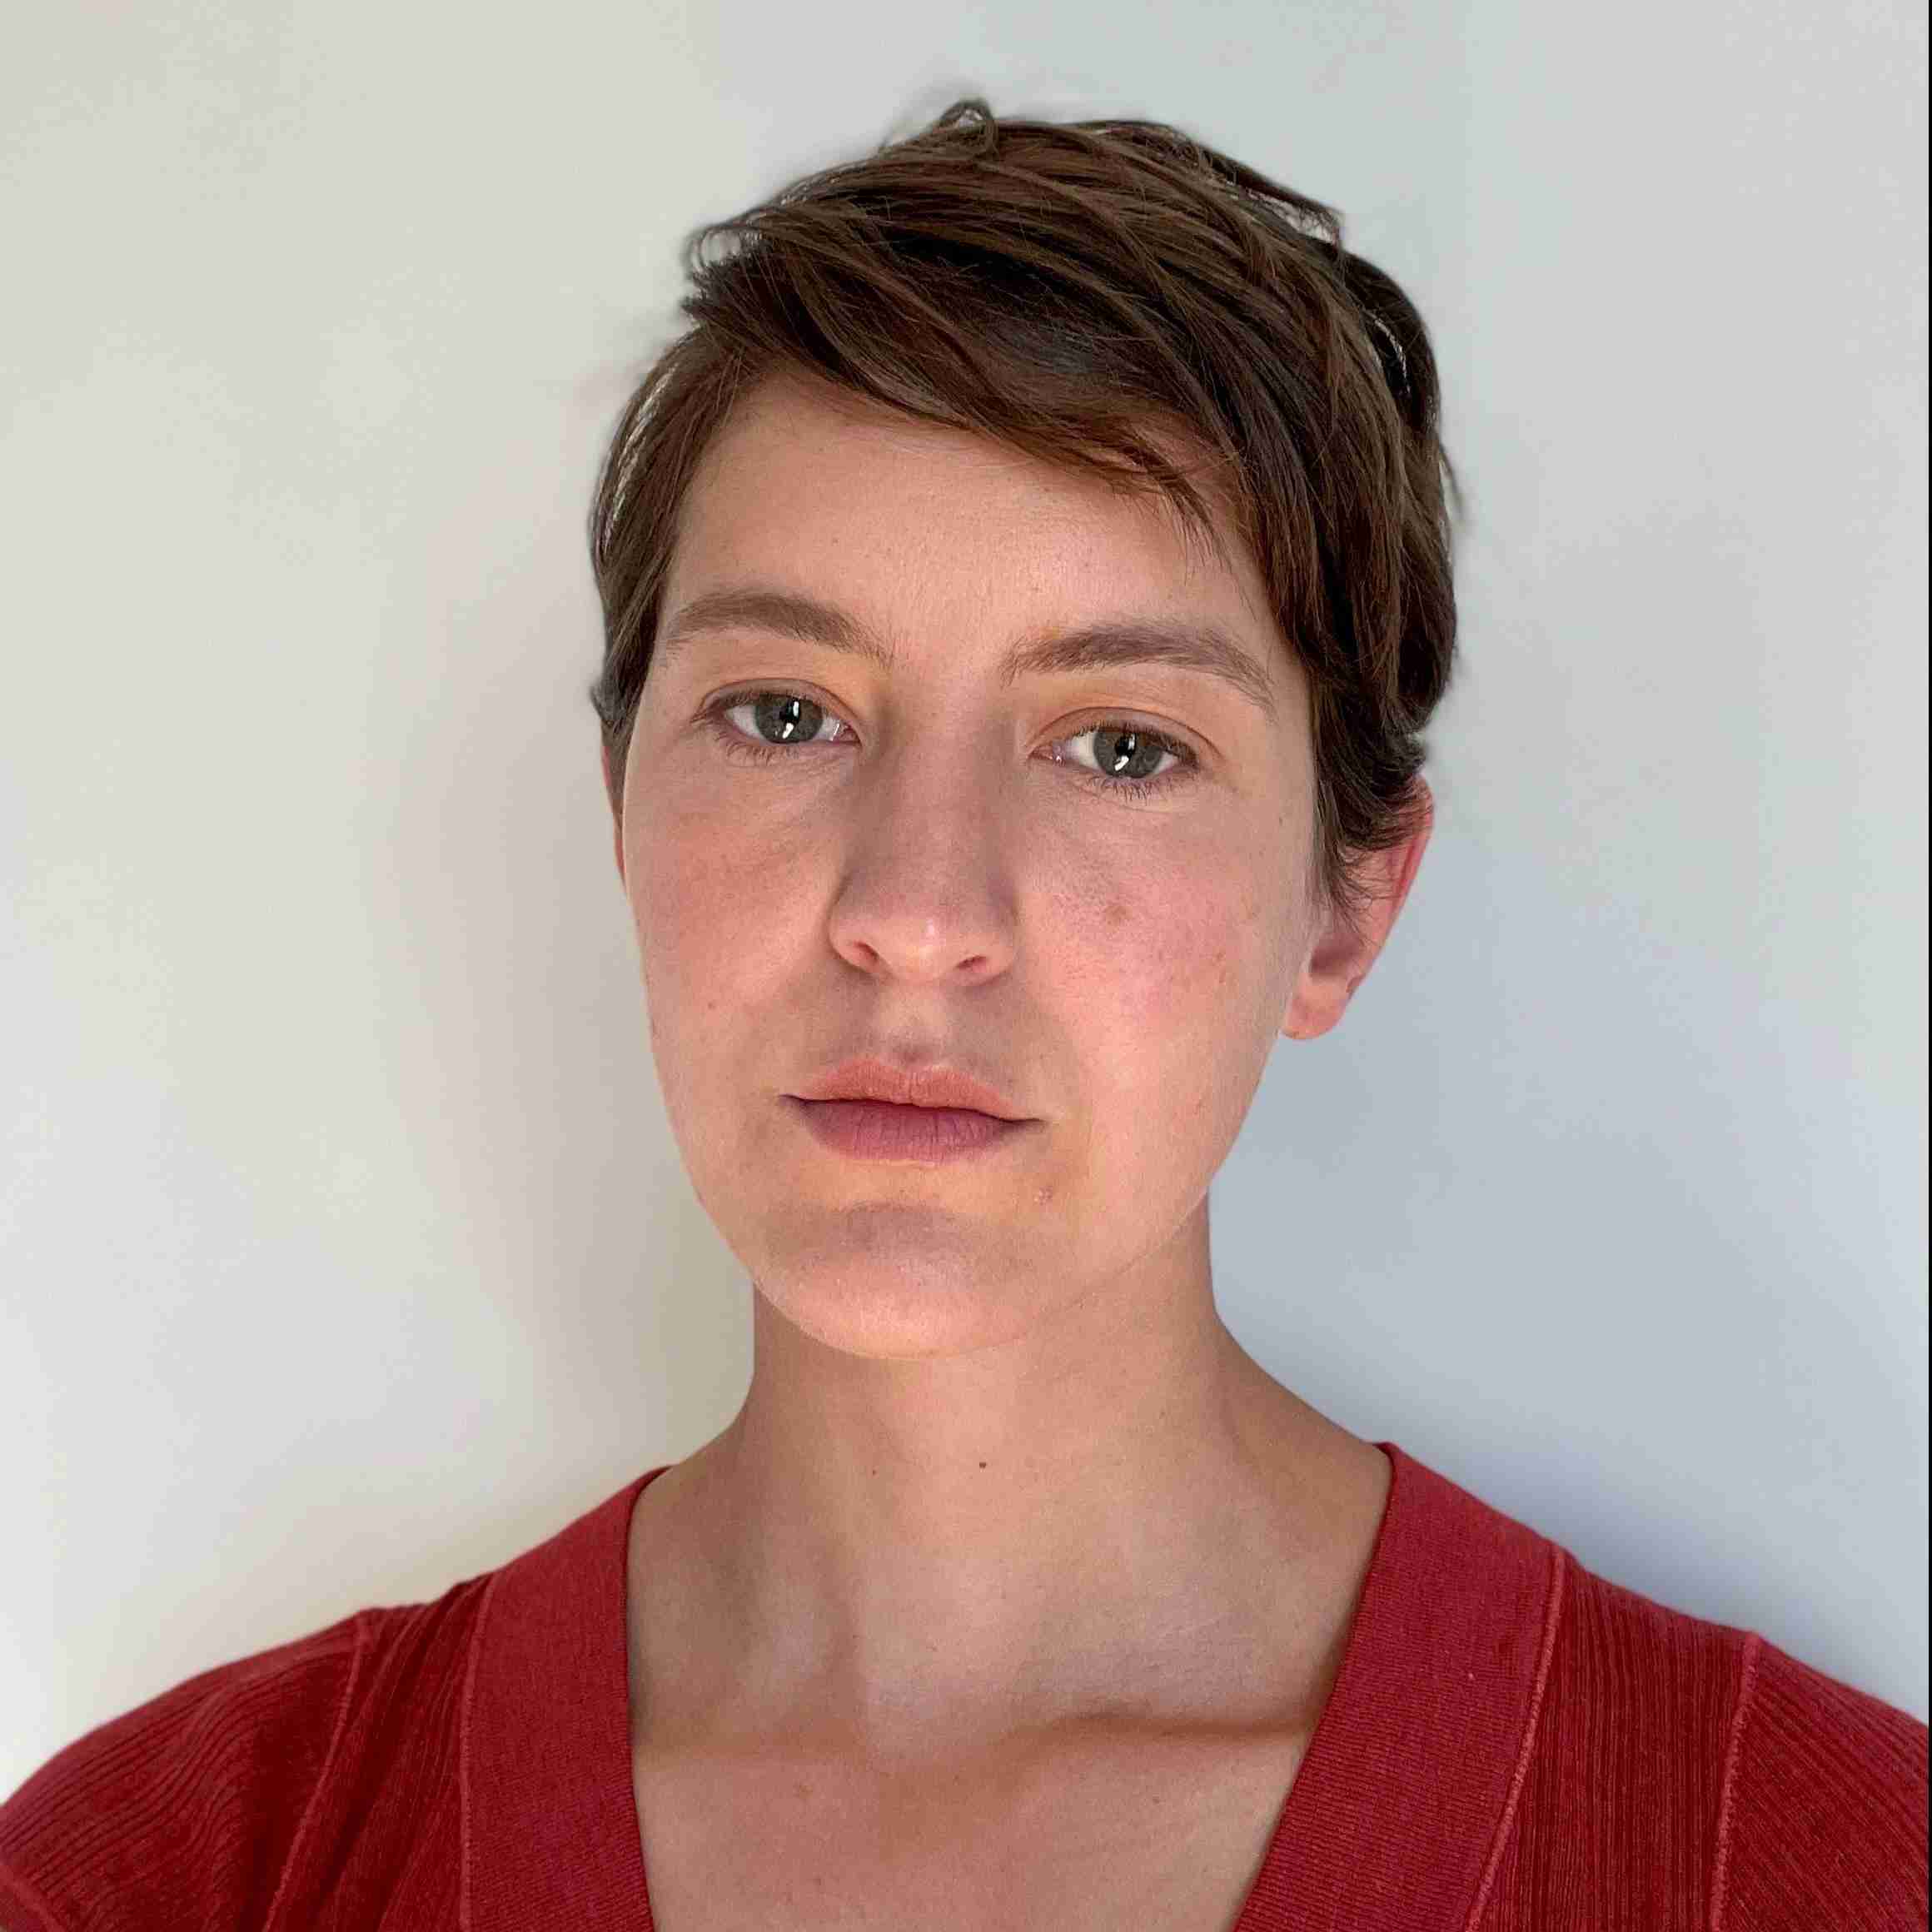 Profile image of Rachael McClatchey